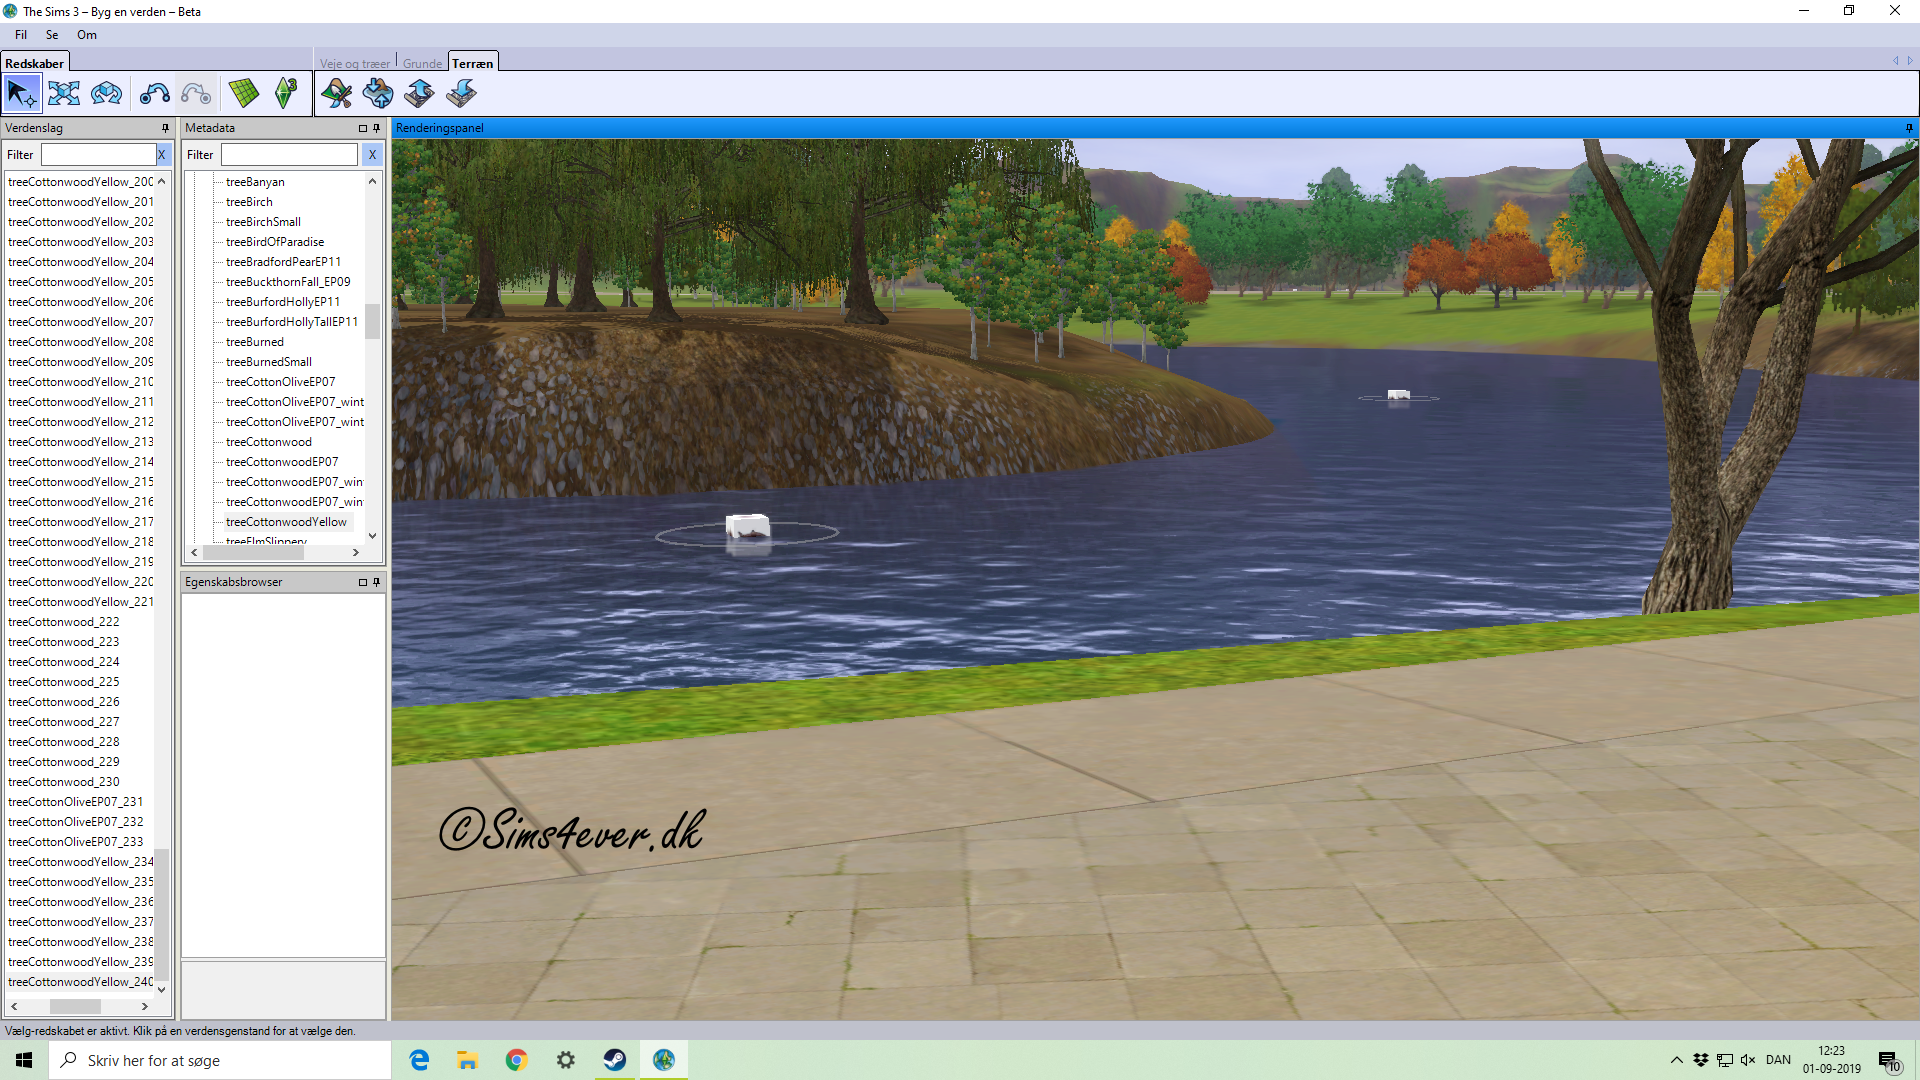 Billeder fra sø området (Sims 3)